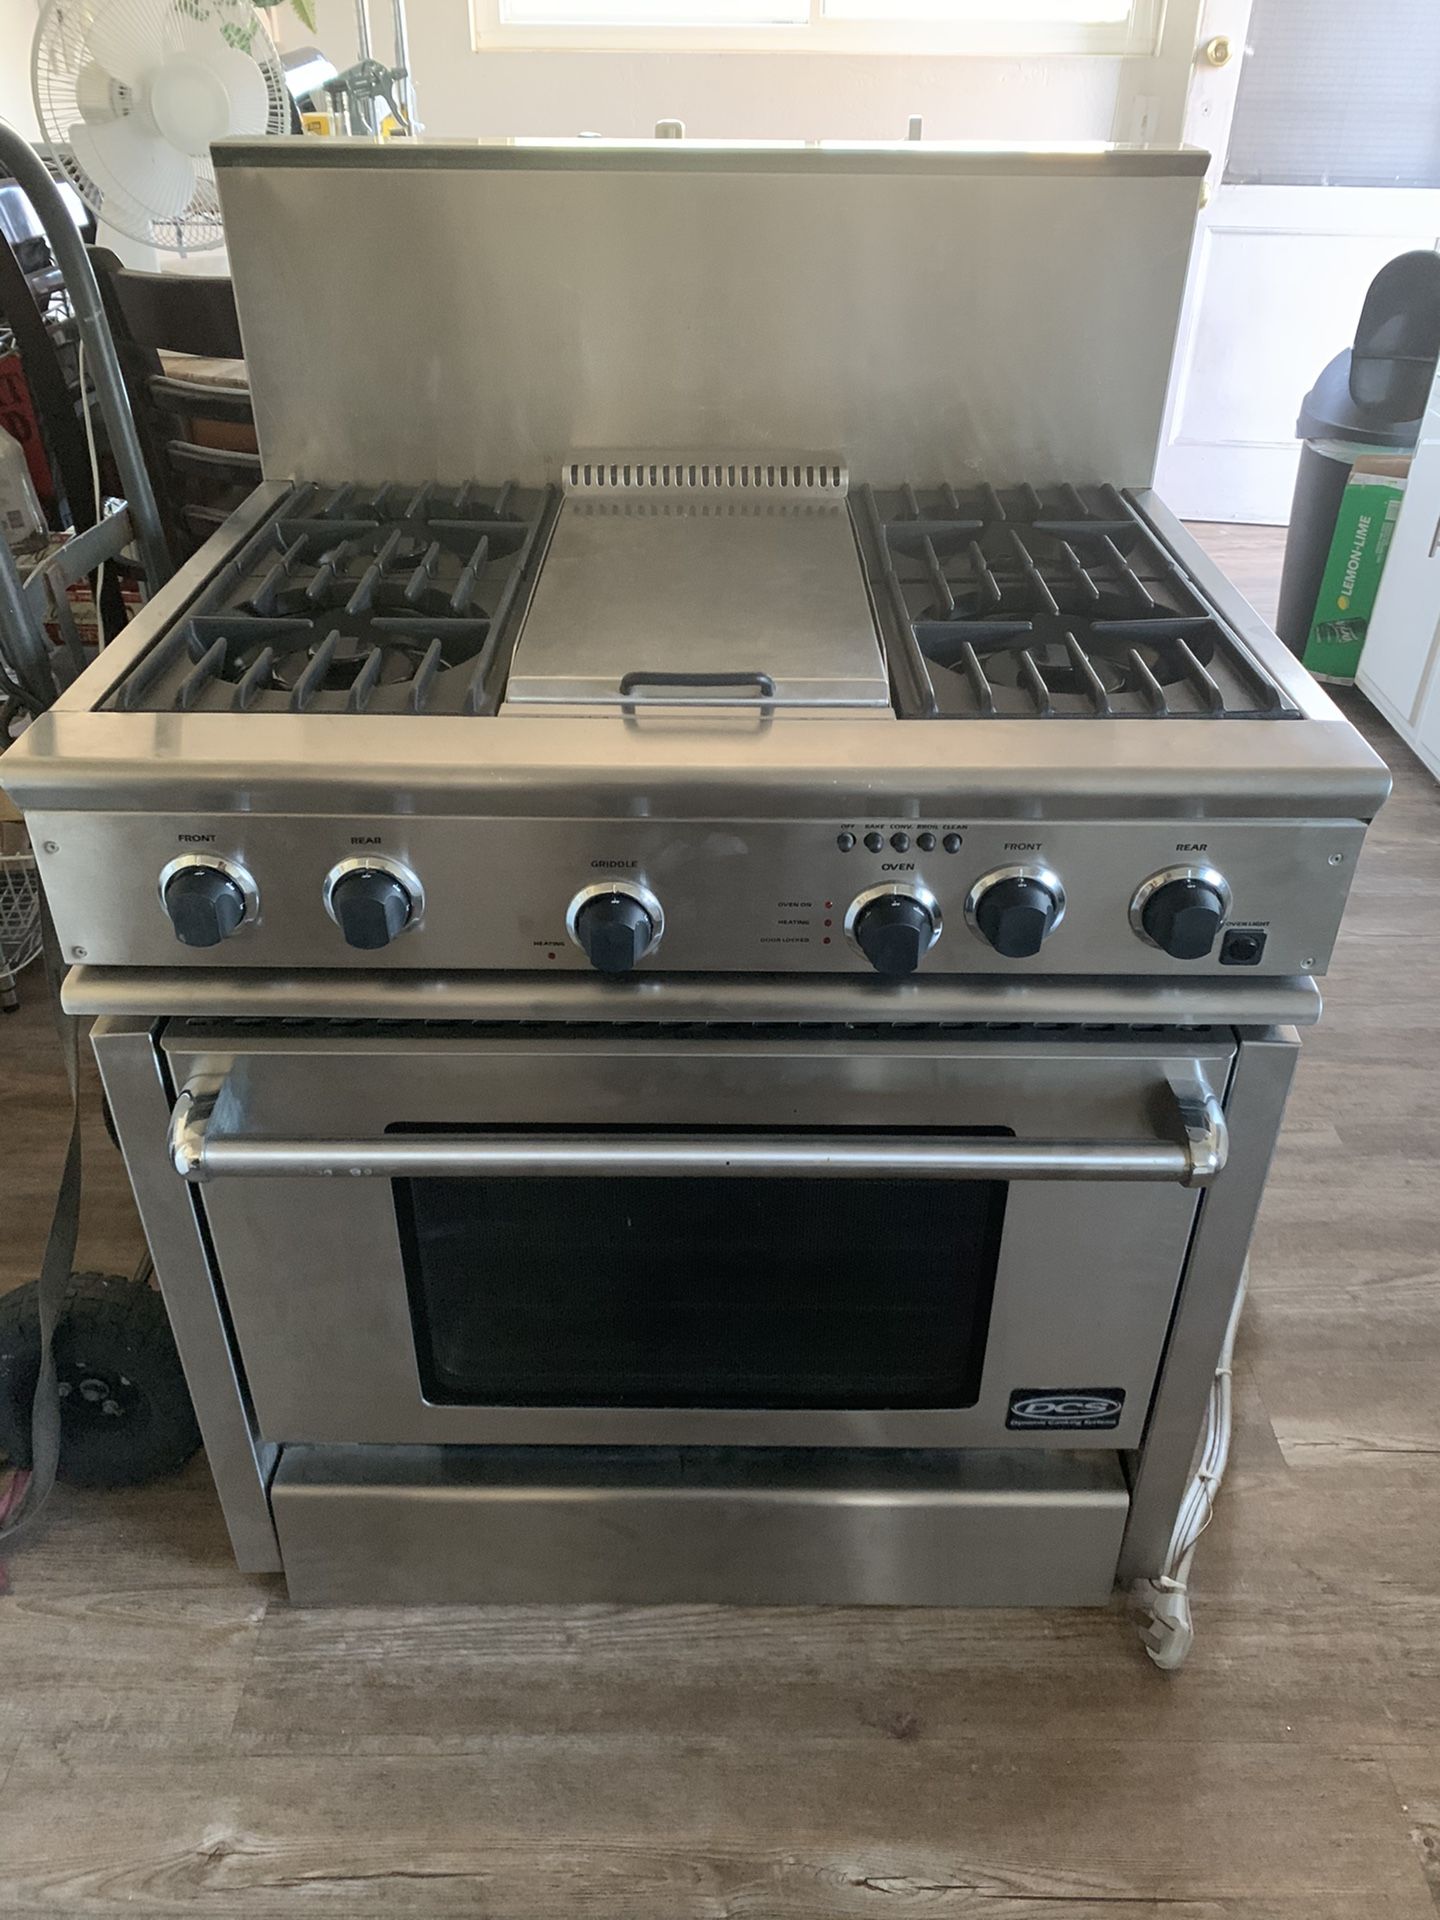 36” DCS stove